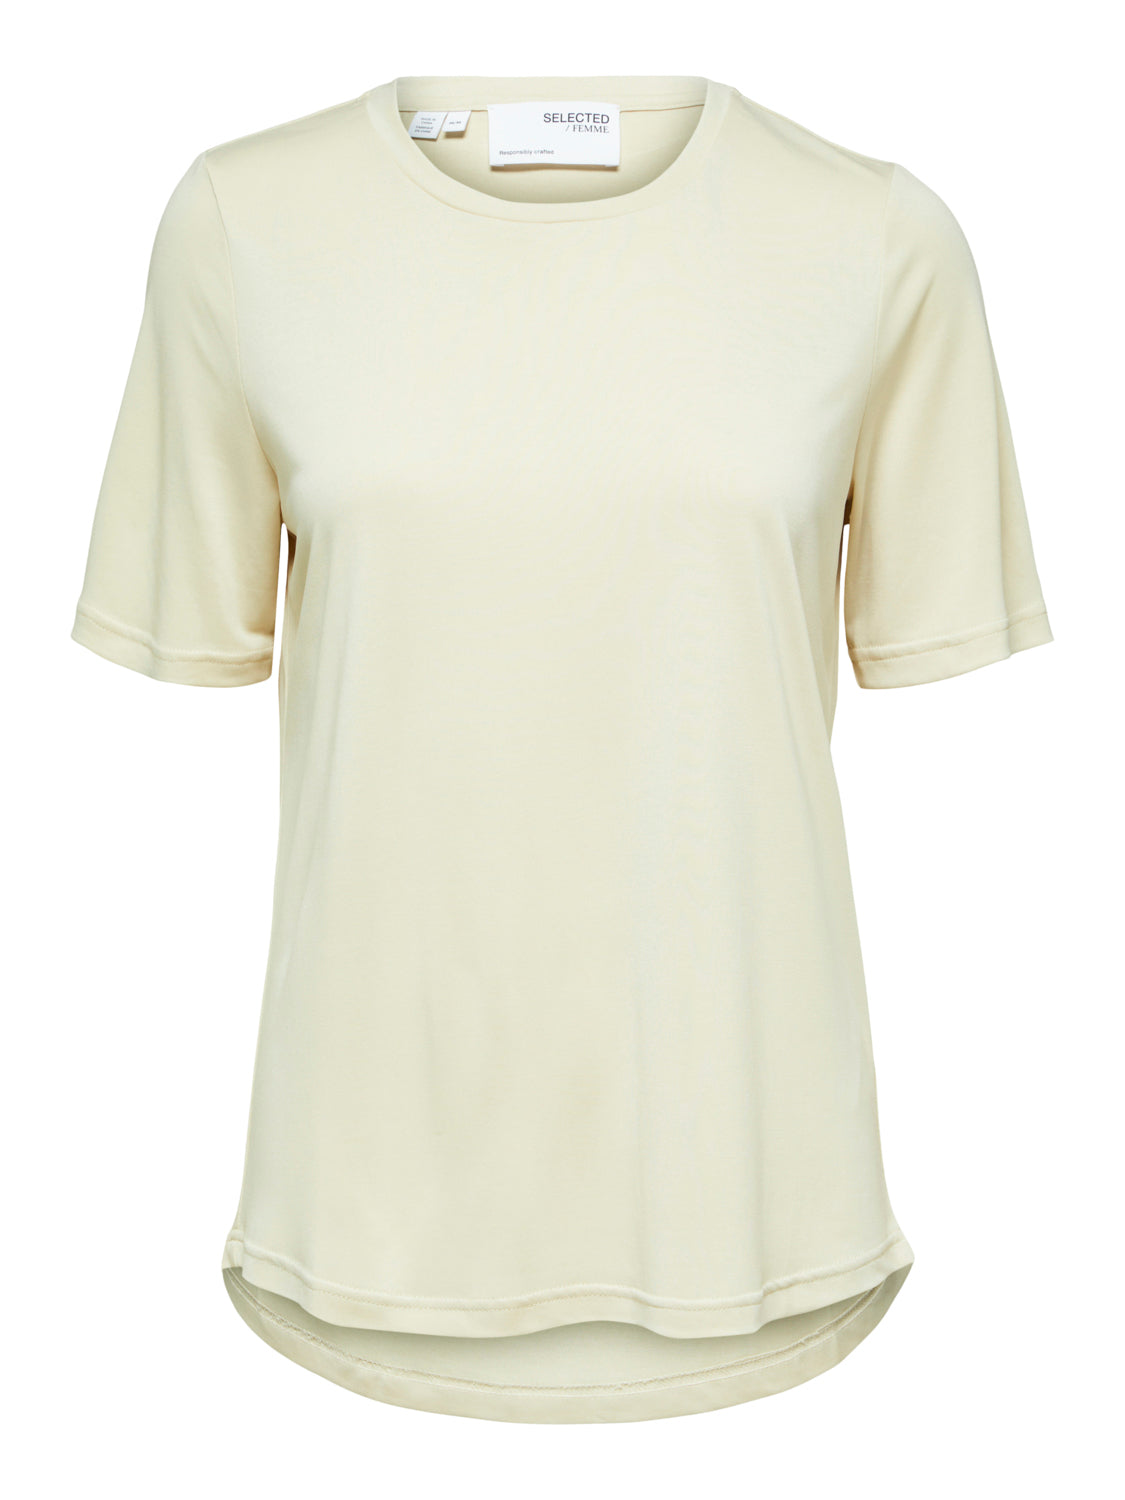 SELECTED FEMME -  STELLA T-Shirt - Sandshell